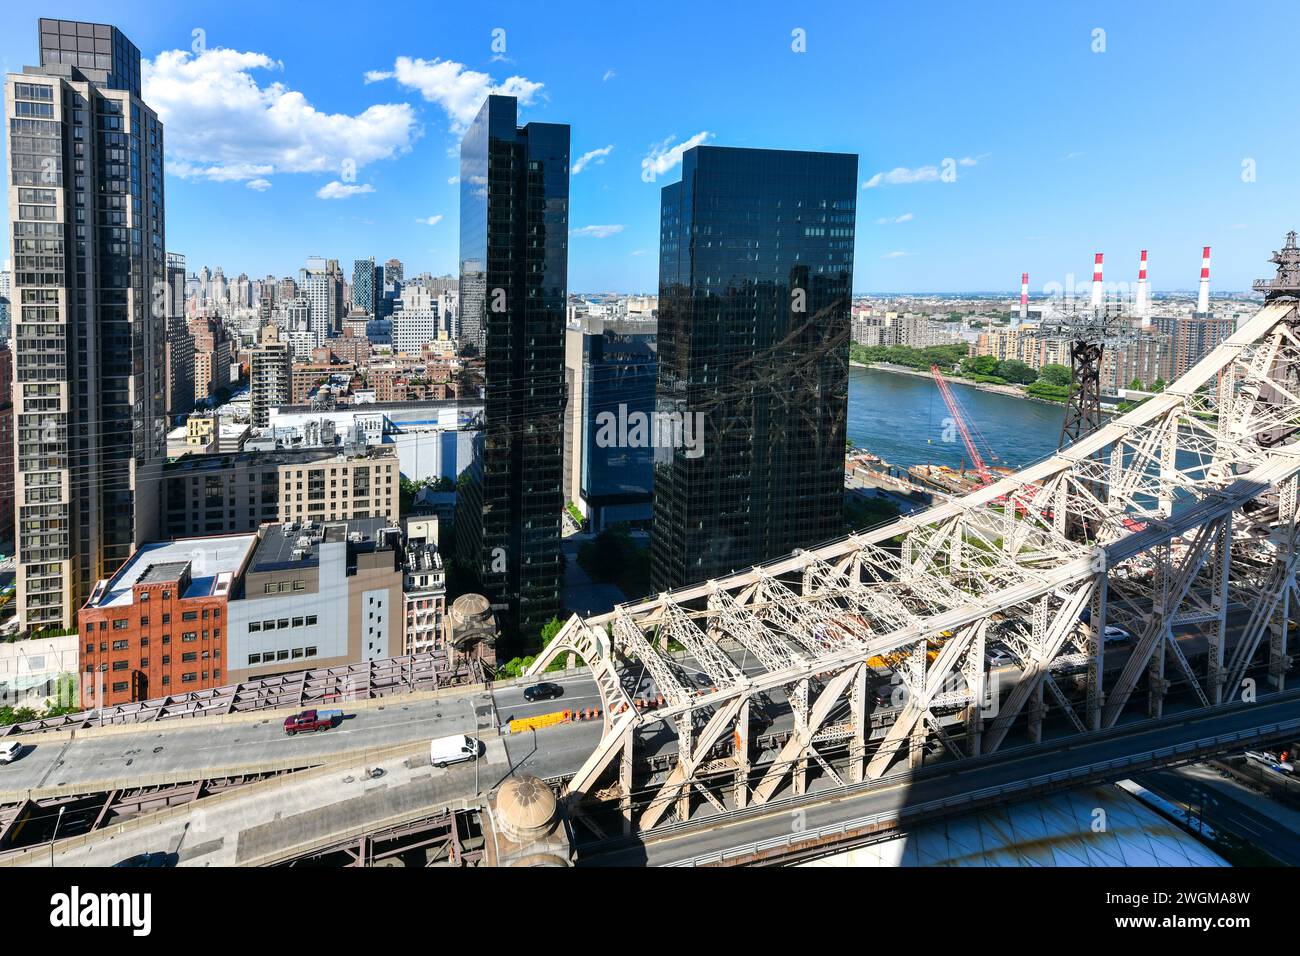 Vue sur le paysage urbain de Midtown East à Manhattan, en regardant vers le nord le long du pont de la 59e rue et du tramway de Roosevelt Island. Banque D'Images